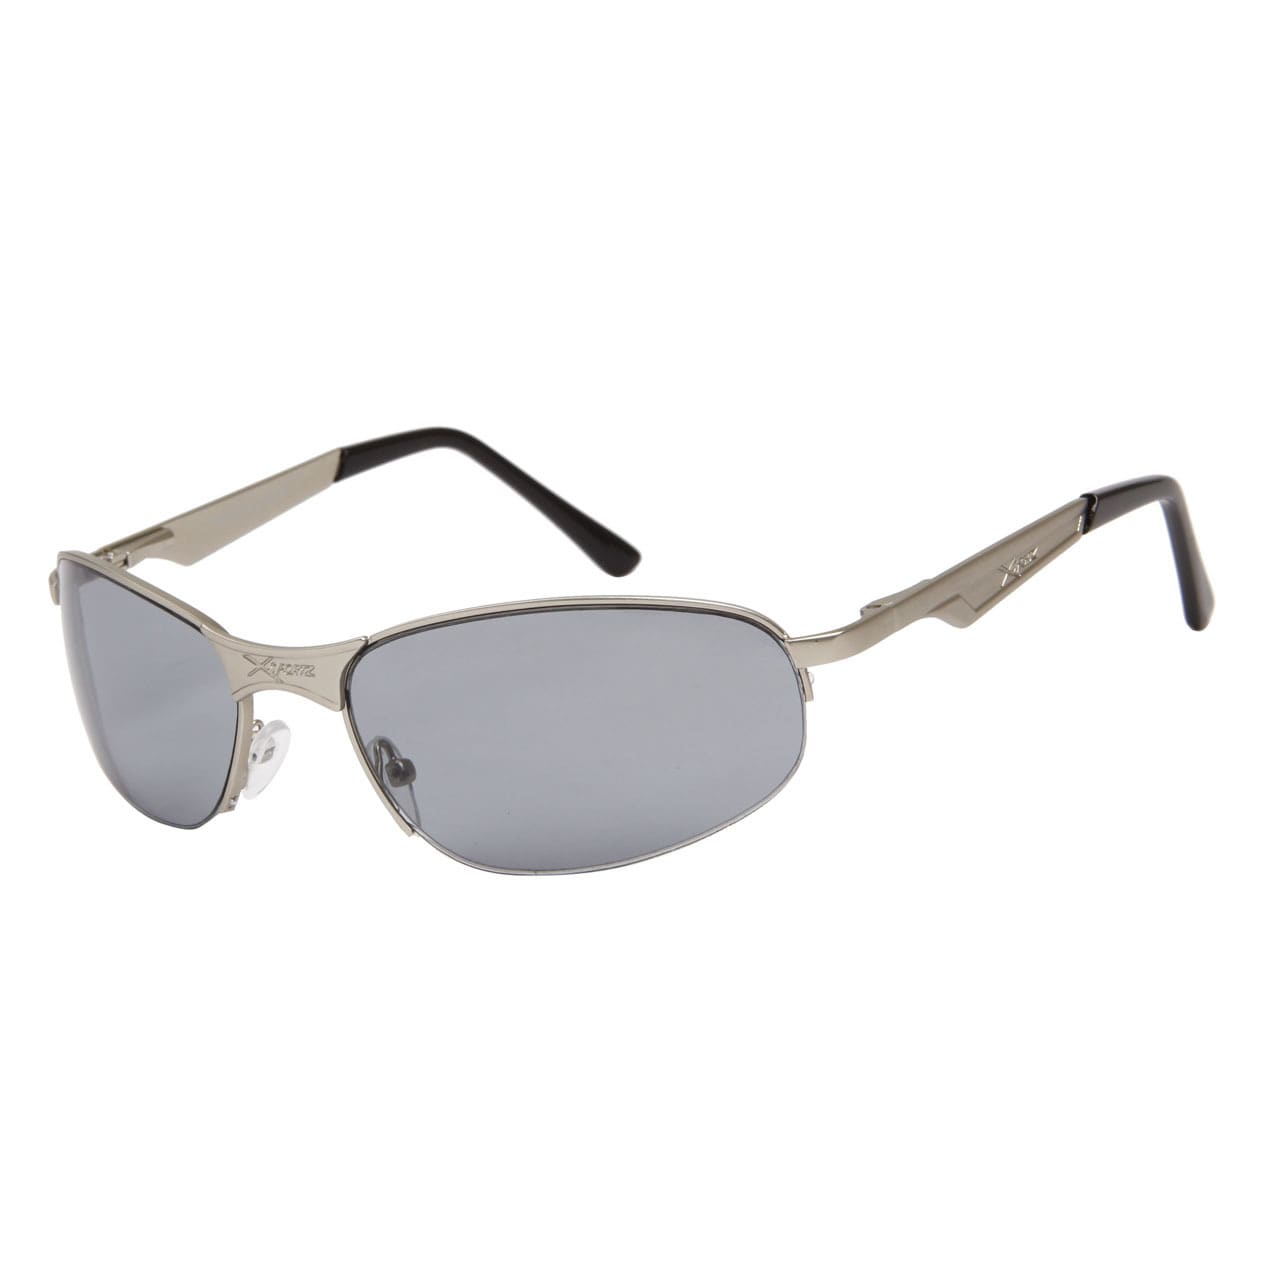 XSPORTZ Solglasögon -  Ljusblå glas och silverbågar